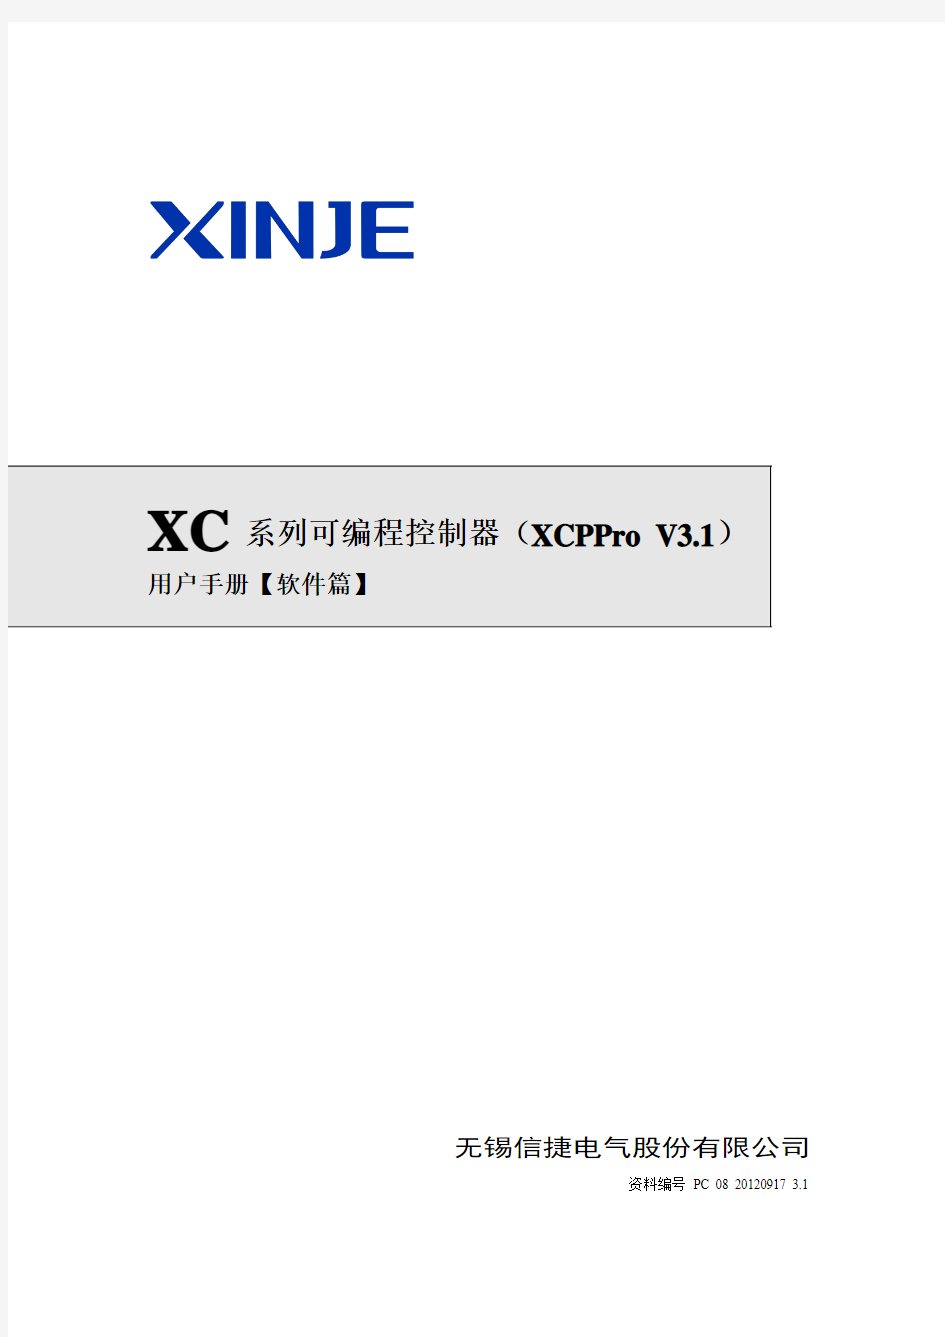 XC系列可编程控制器用户手册【软件篇】20140426